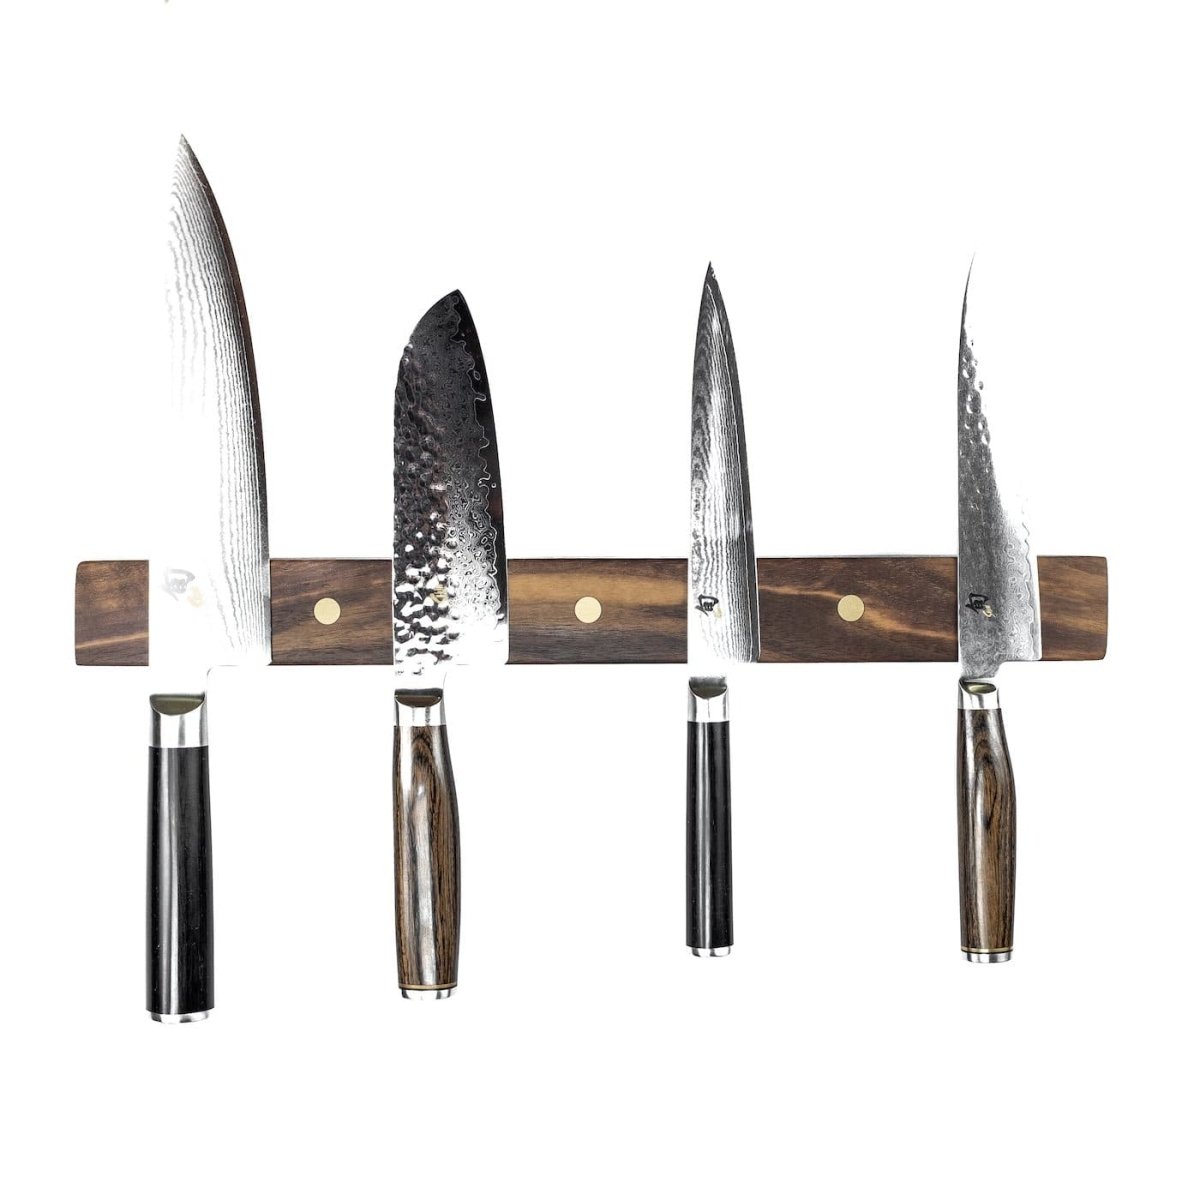 Rune-Jakobsen Woodworks 'Knifeboard Classic' dyb knivmagnet_7 by Rune-Jakobsen Design